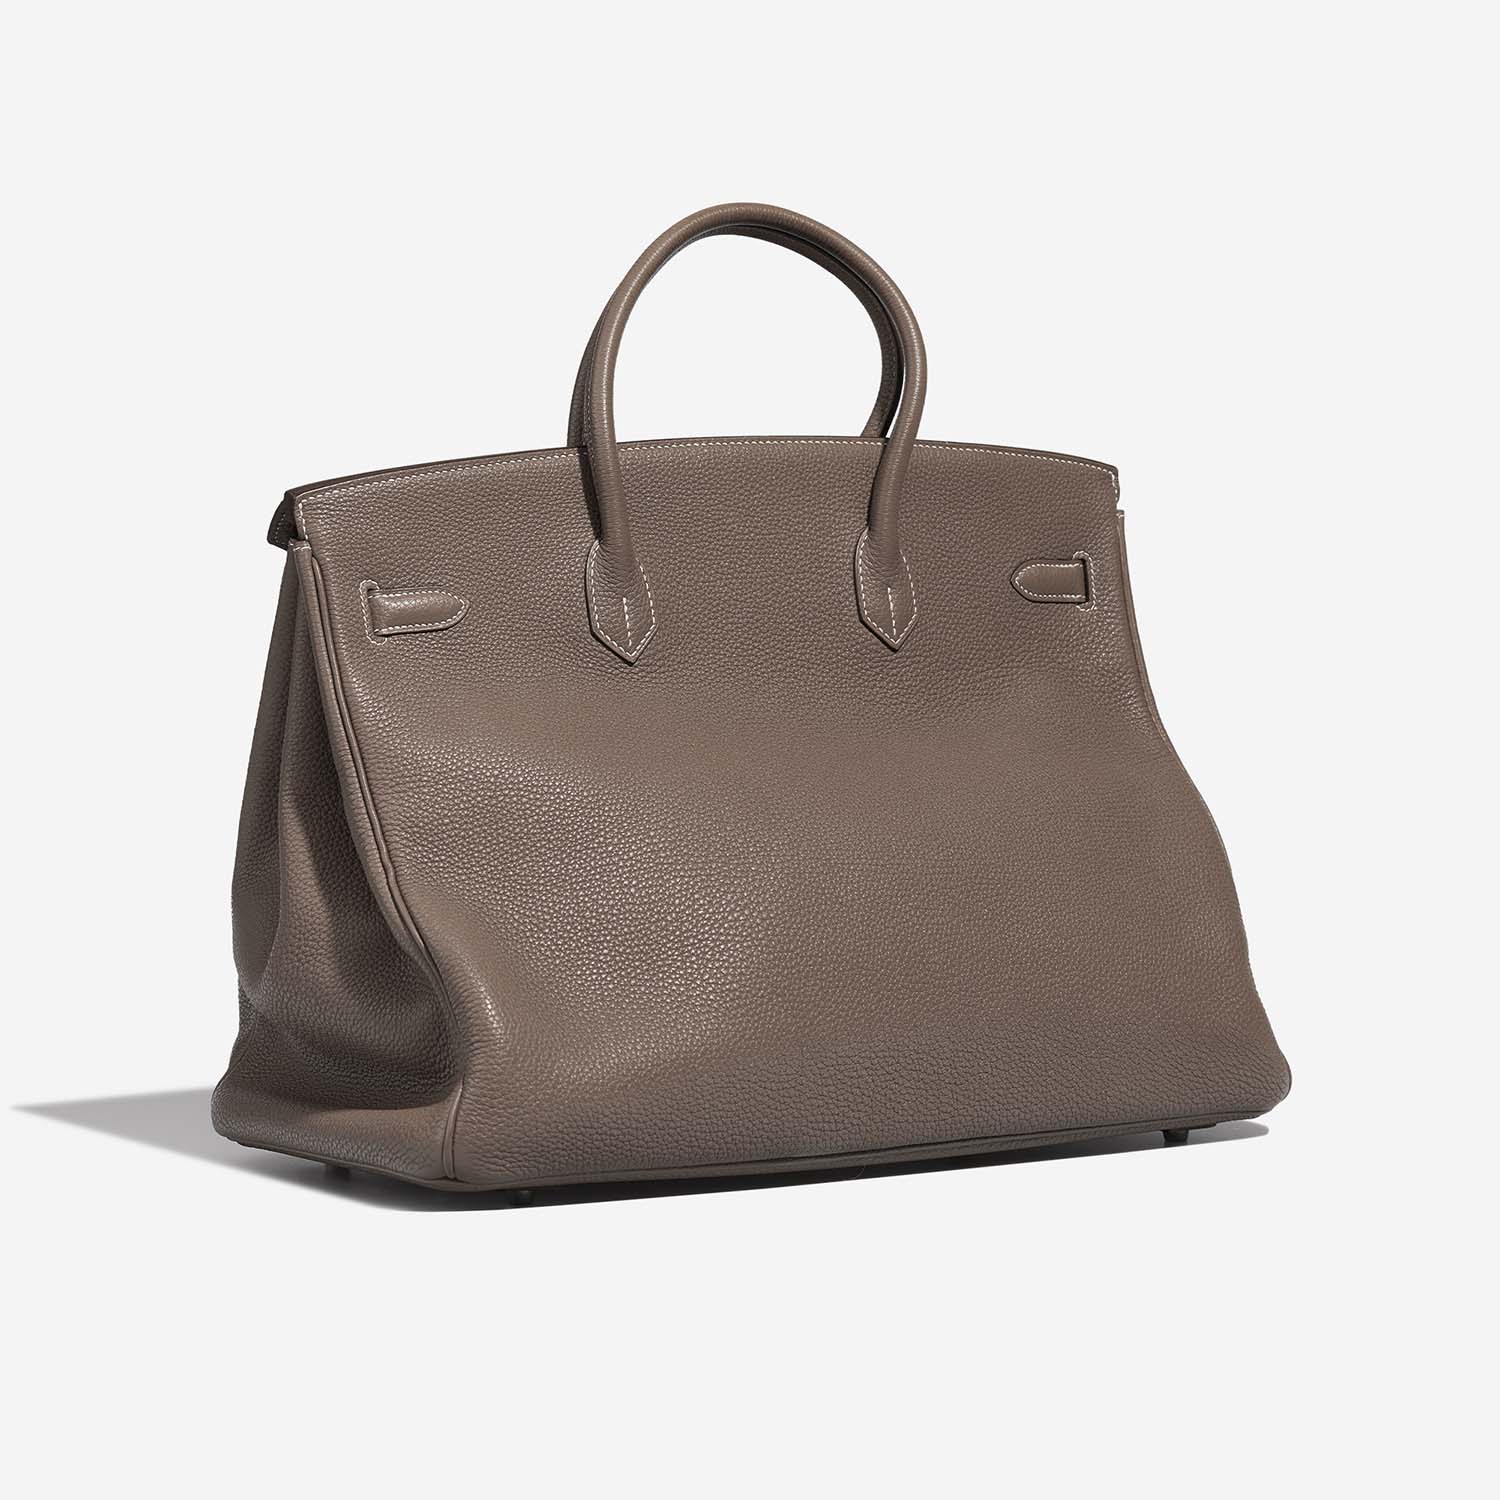 Hermès Birkin 40 Etoupe Side Back | Verkaufen Sie Ihre Designer-Tasche auf Saclab.com